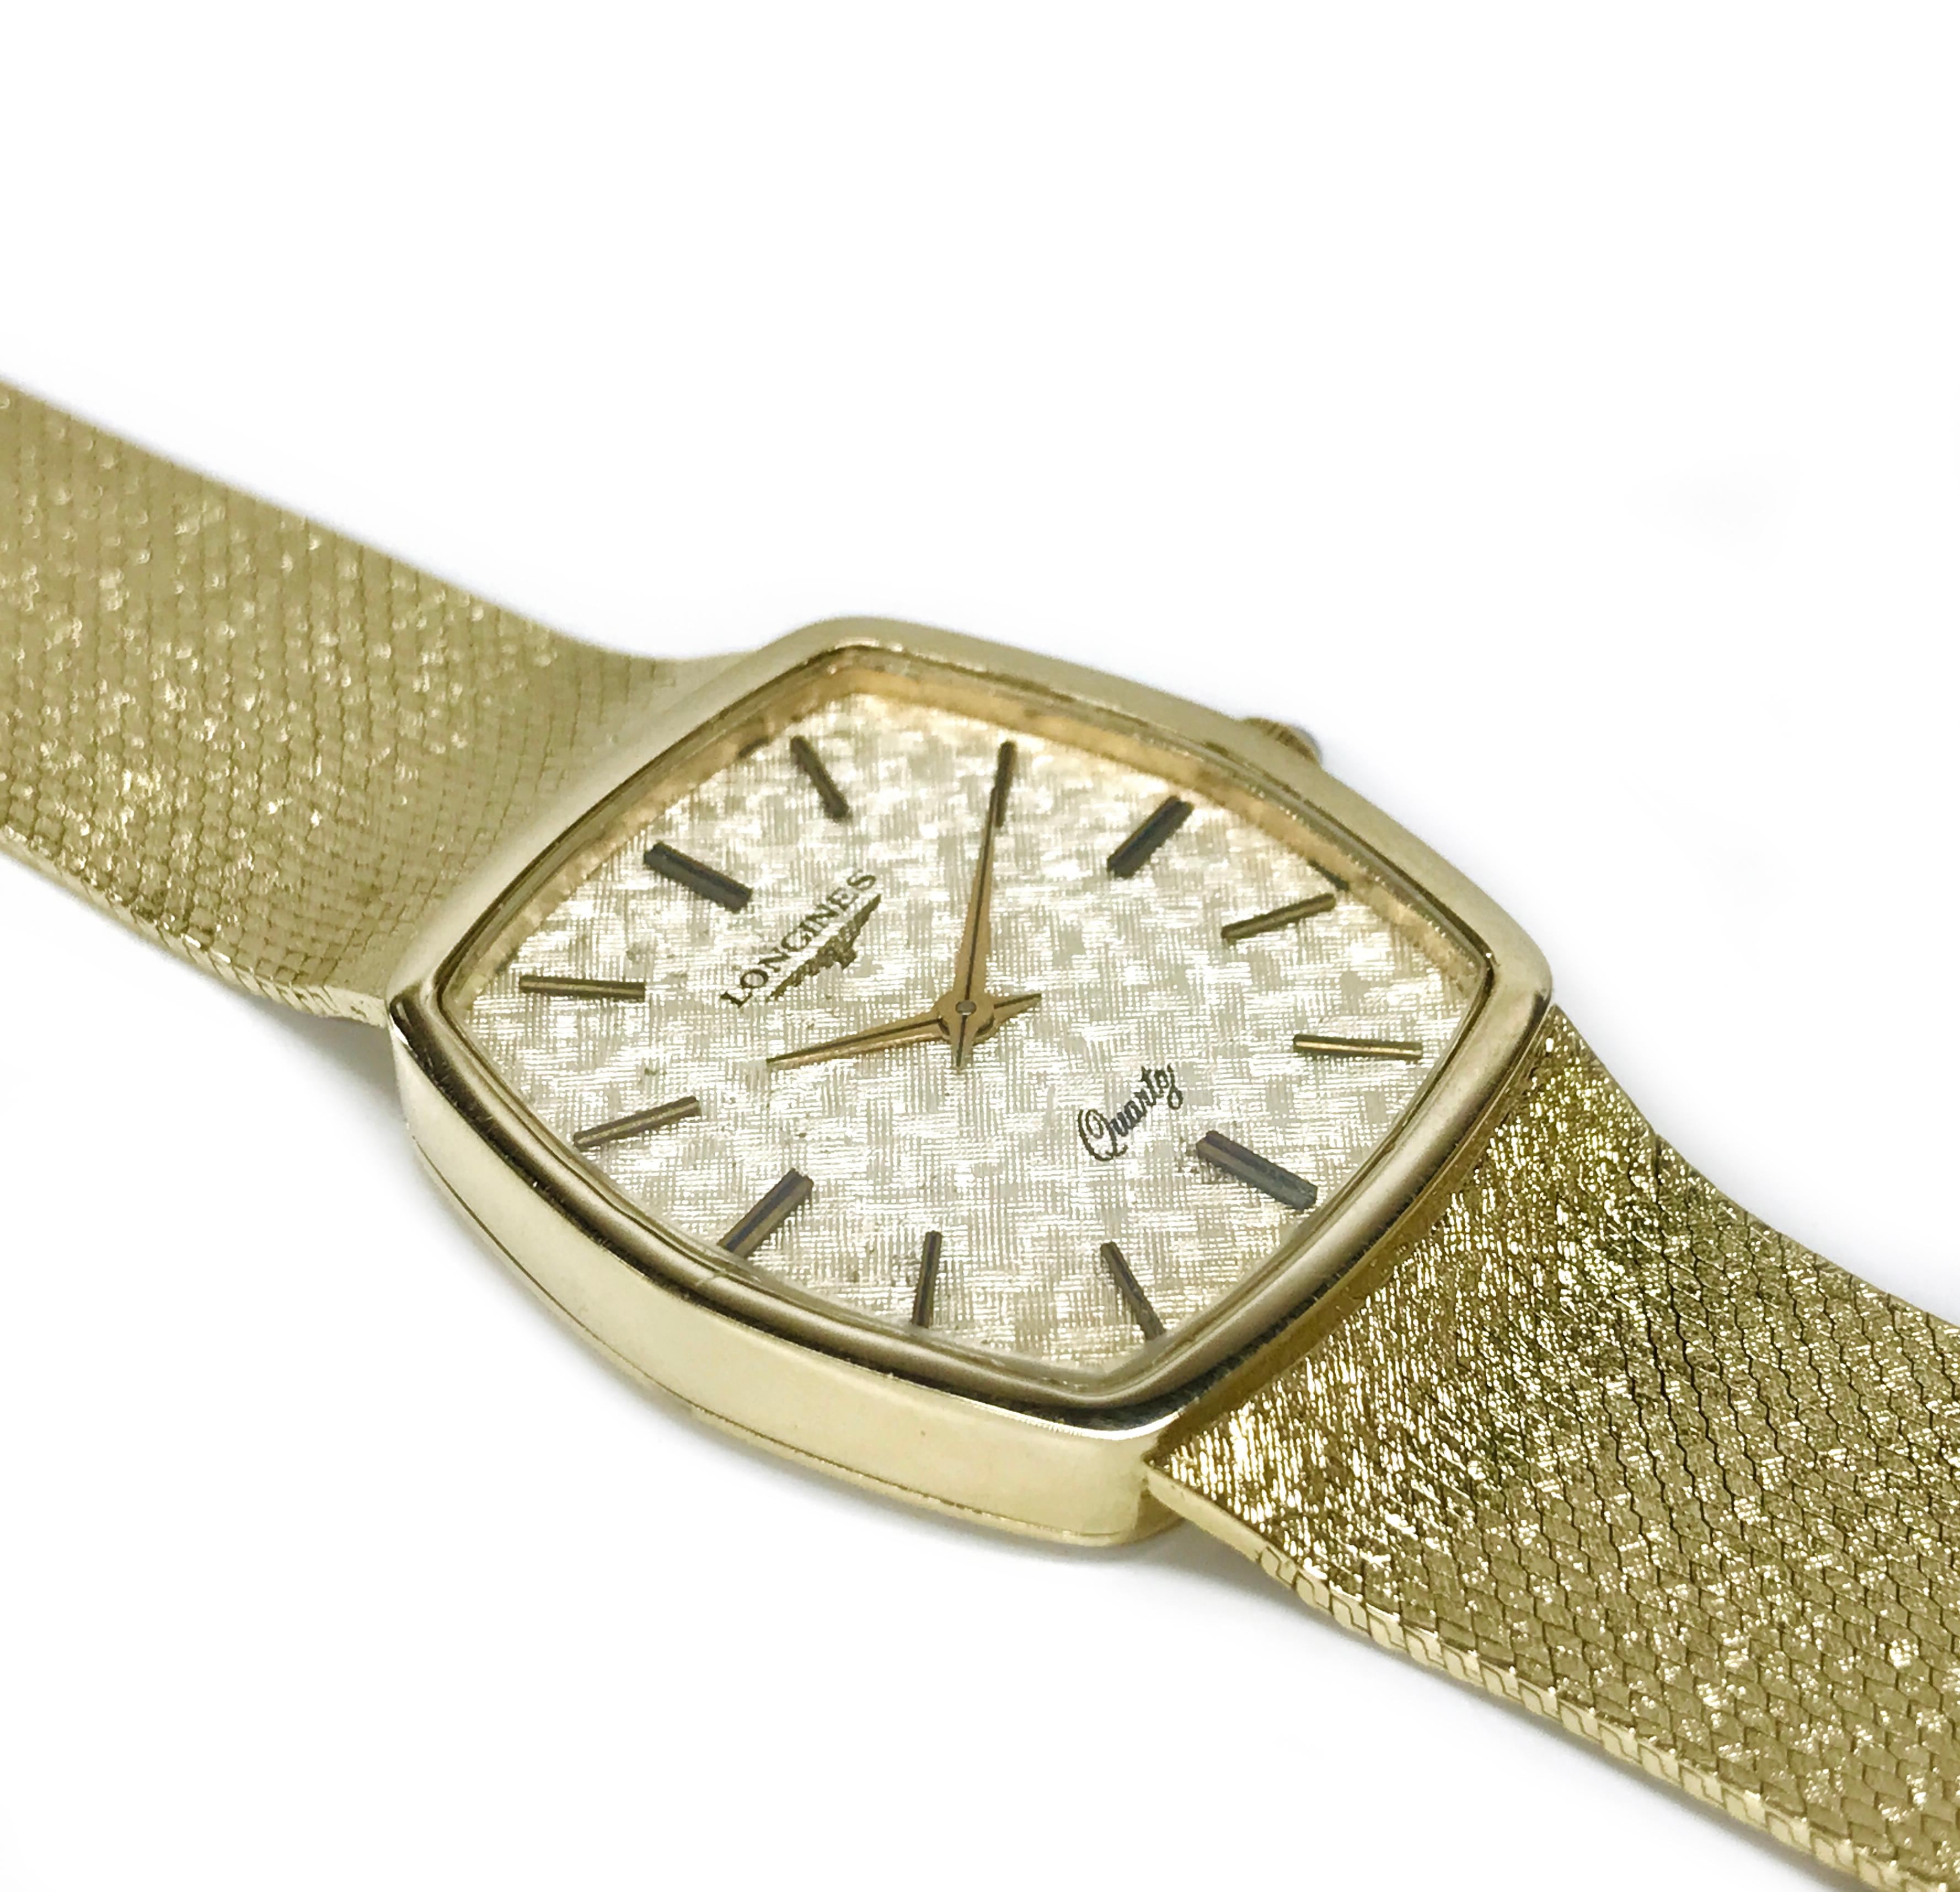 Longines Herrenuhr aus 14 Karat Gold. Diese Longines Armbanduhr aus den 1980er Jahren hat ein Gehäuse aus 14 Karat Gelbgold und ein Armband im Mesh-Stil mit Faltschließe. Die Uhr hat Gold bar Stunden und Gold Alpha-Stil Stundenzeiger. 14k Gelbgold